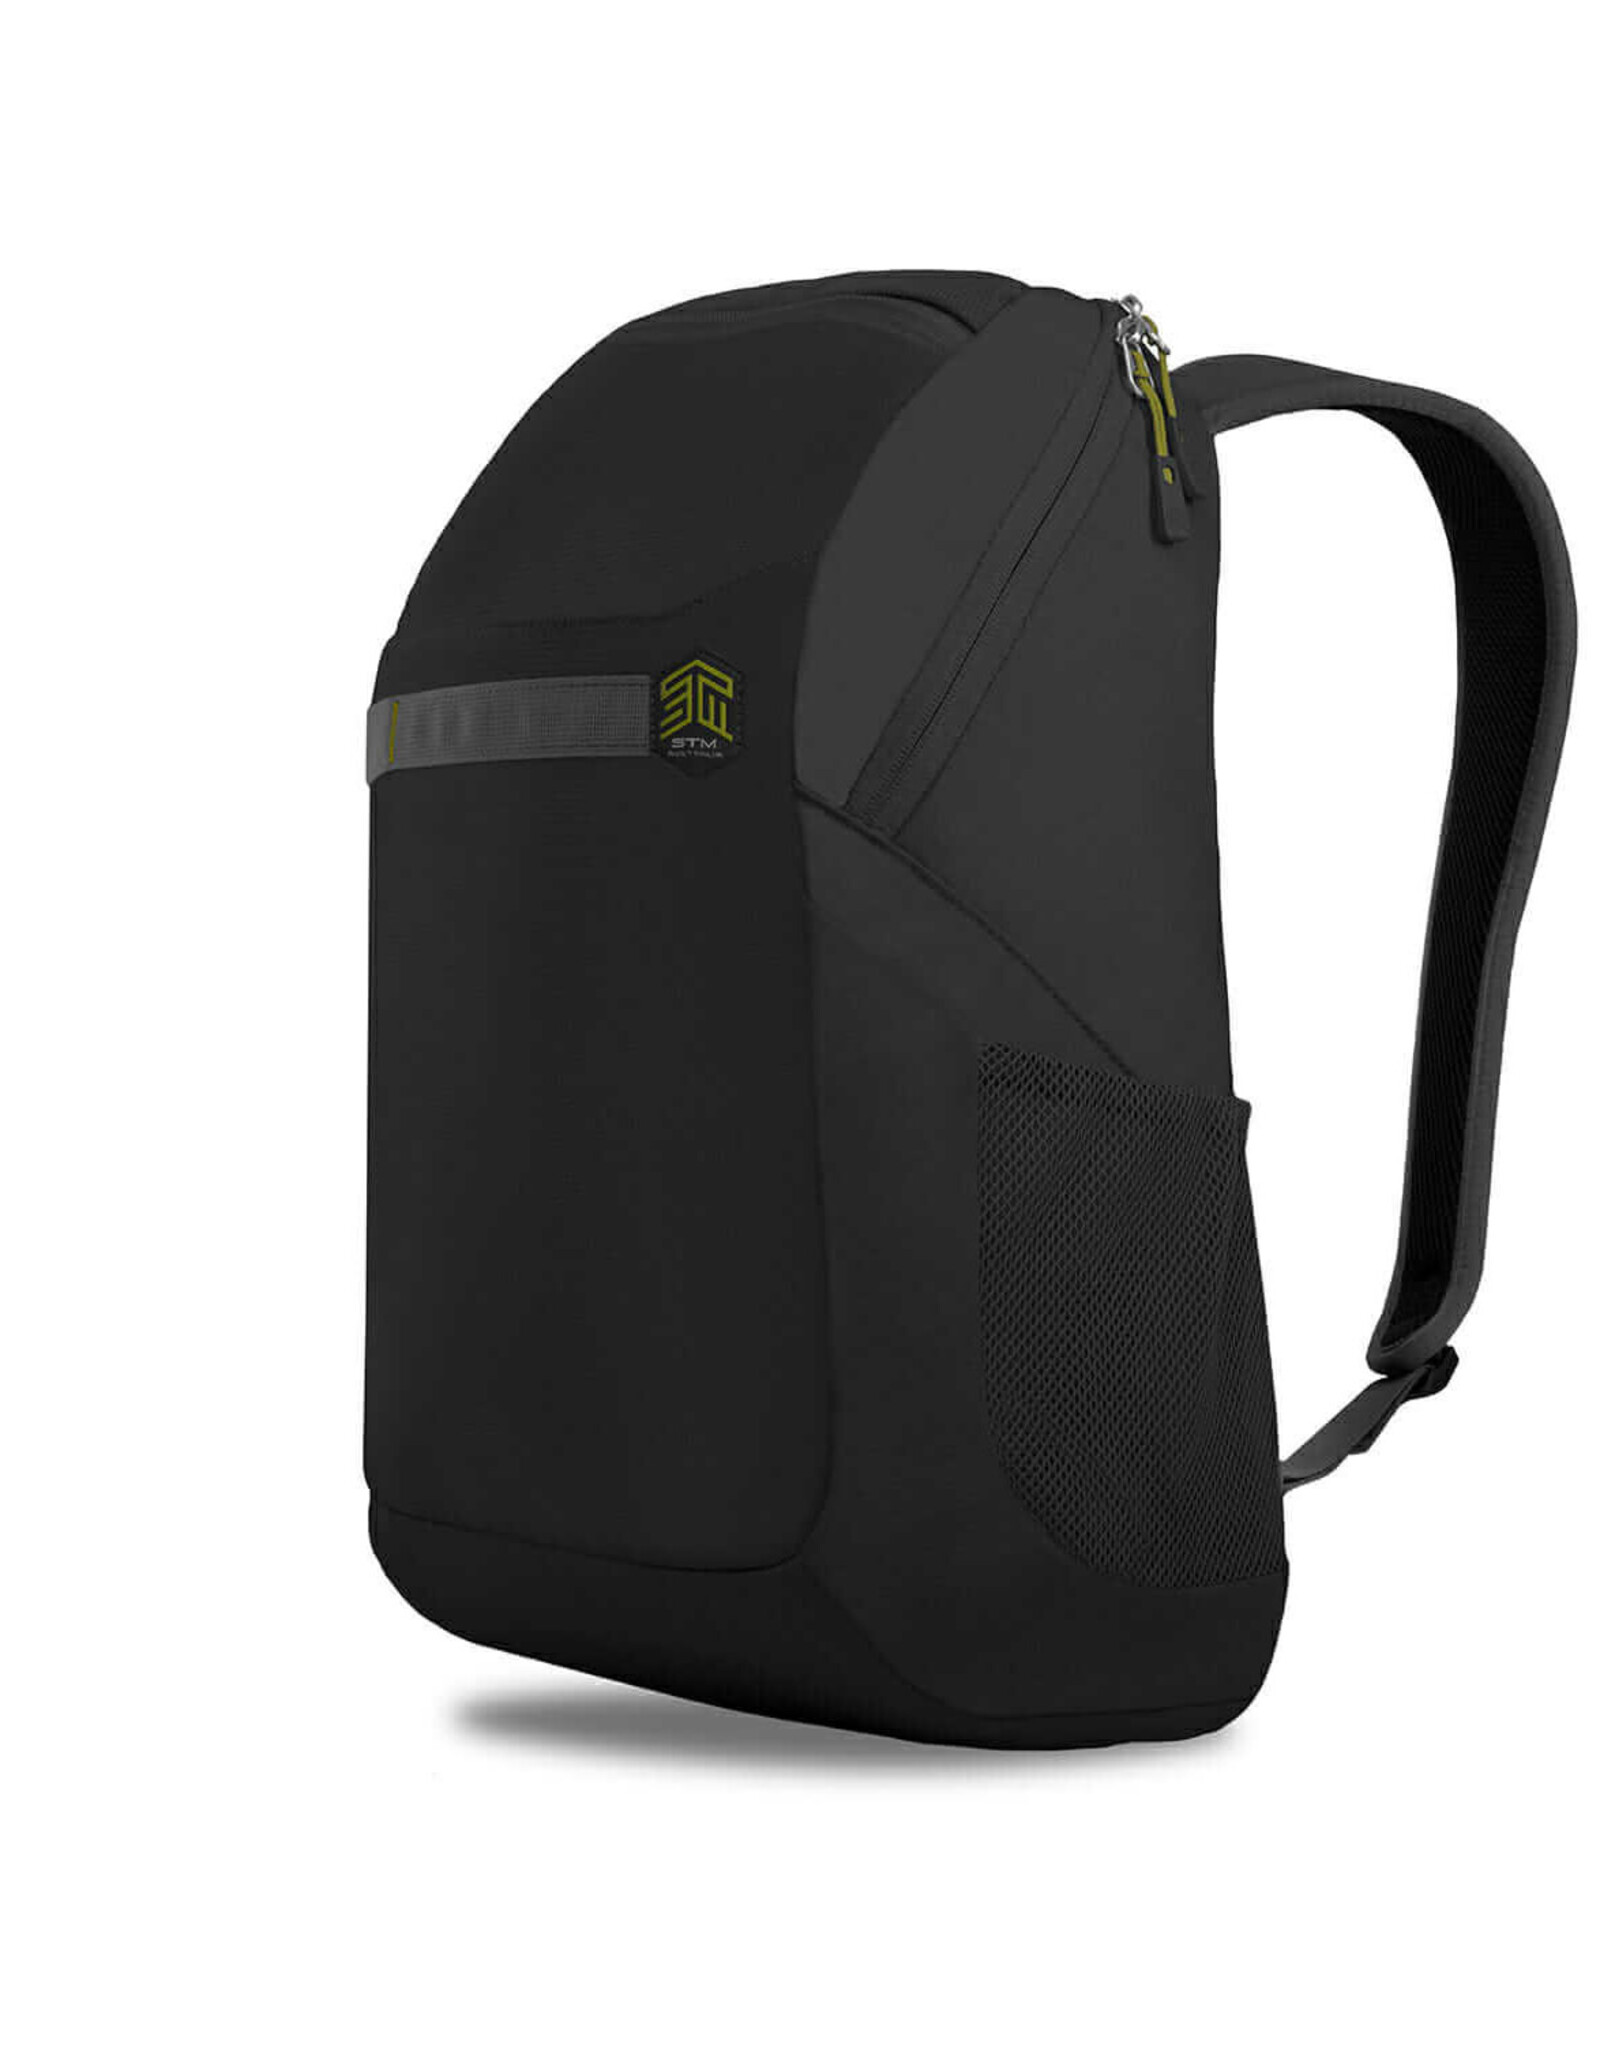 STM STM SAGA Laptop Backpack - Black - suits up to 16" MacBook Pro